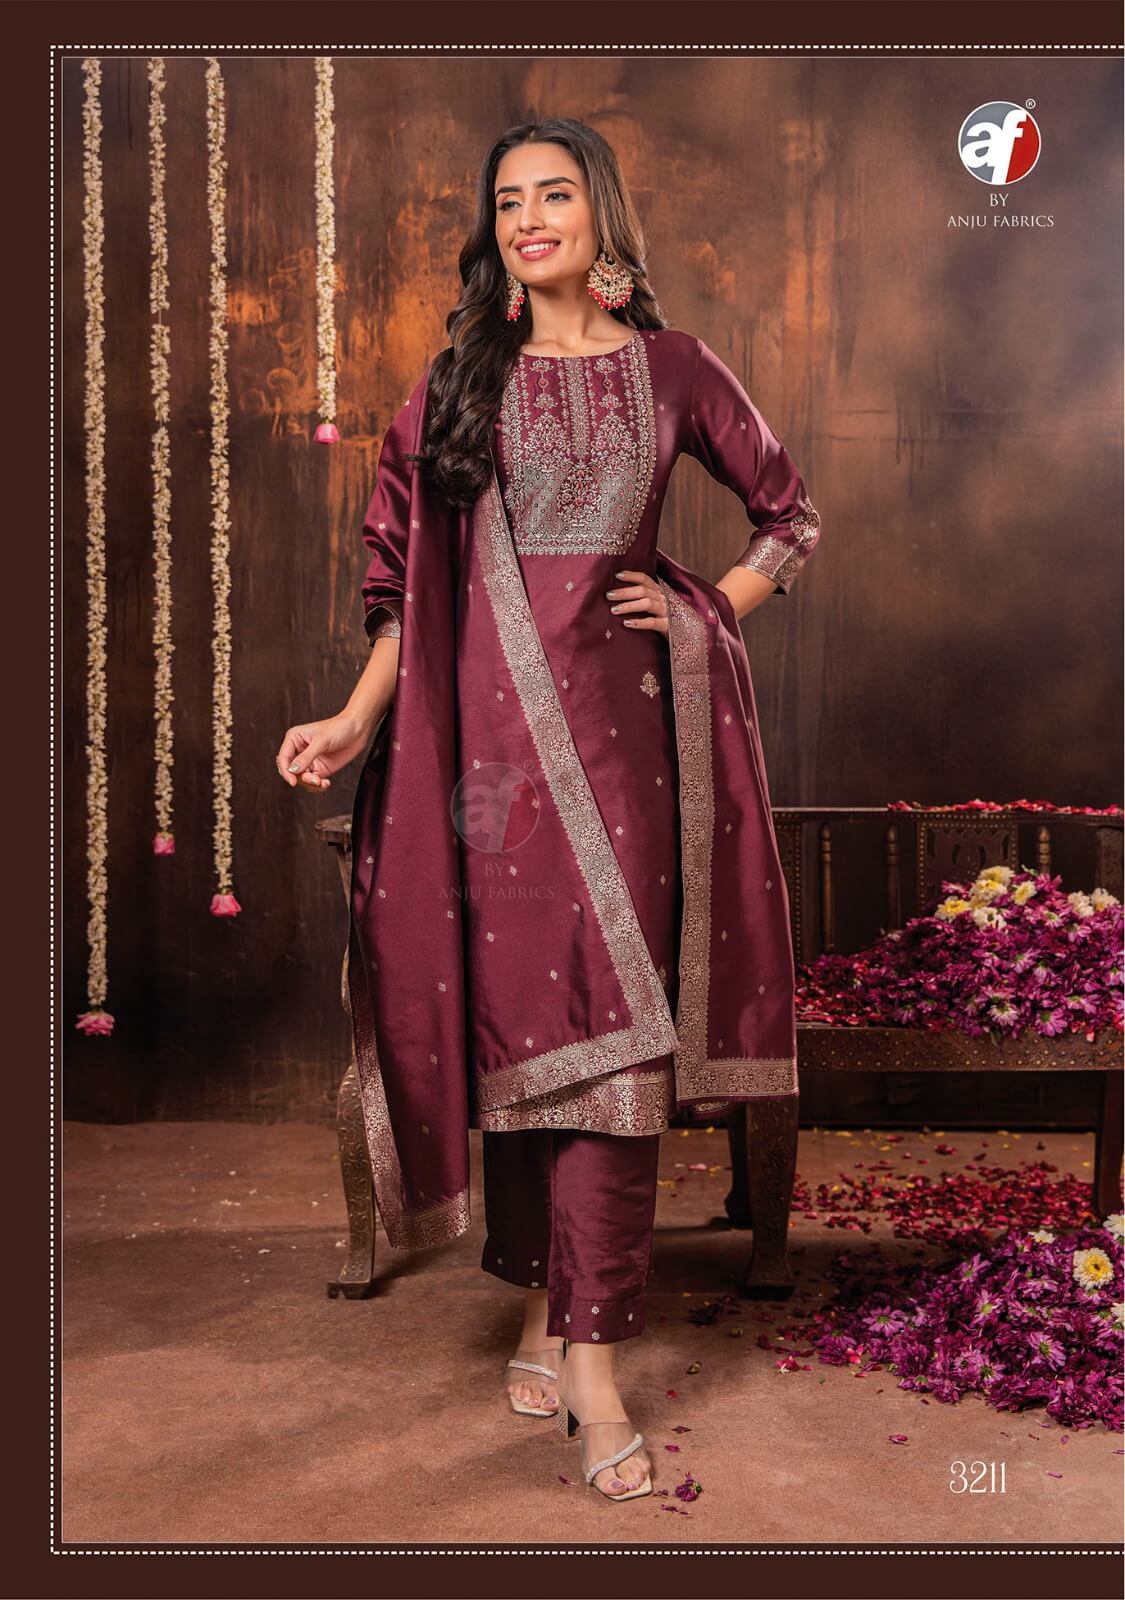 Anju Fabrics Silk Affairs 2 Designer Wedding Party Salwar Suits collection 4